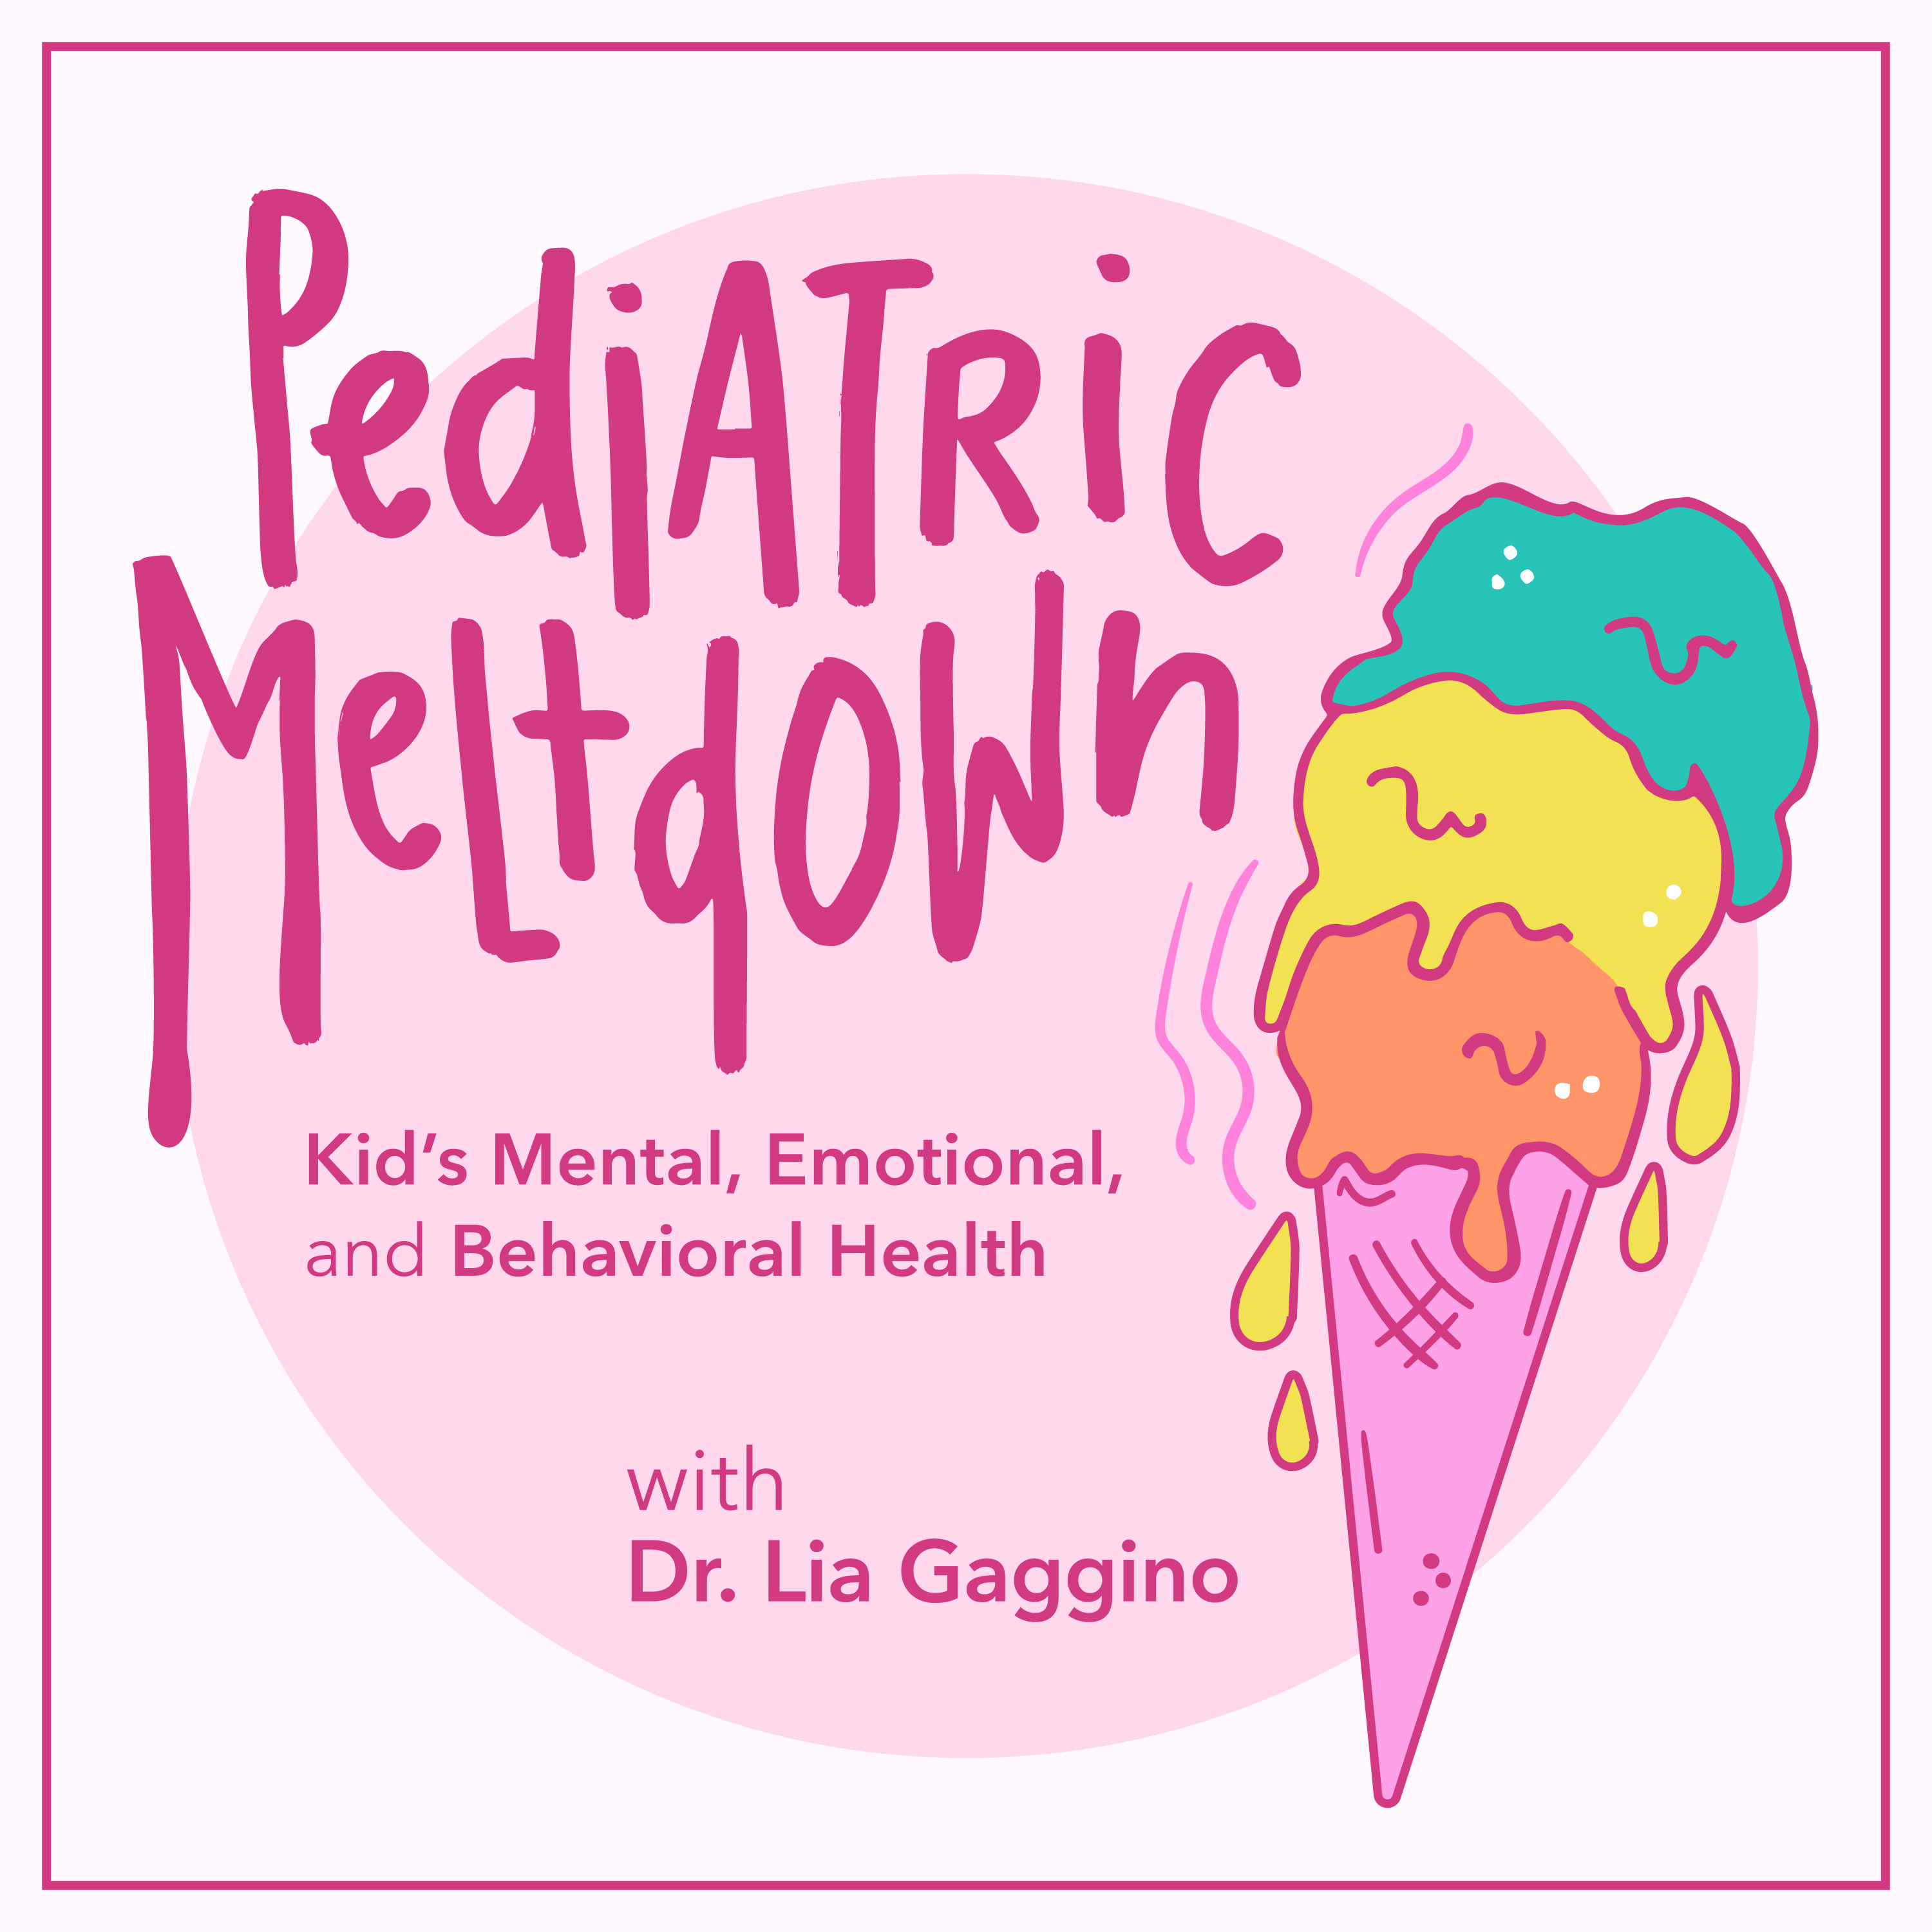 Artwork for Pediatric Meltdown